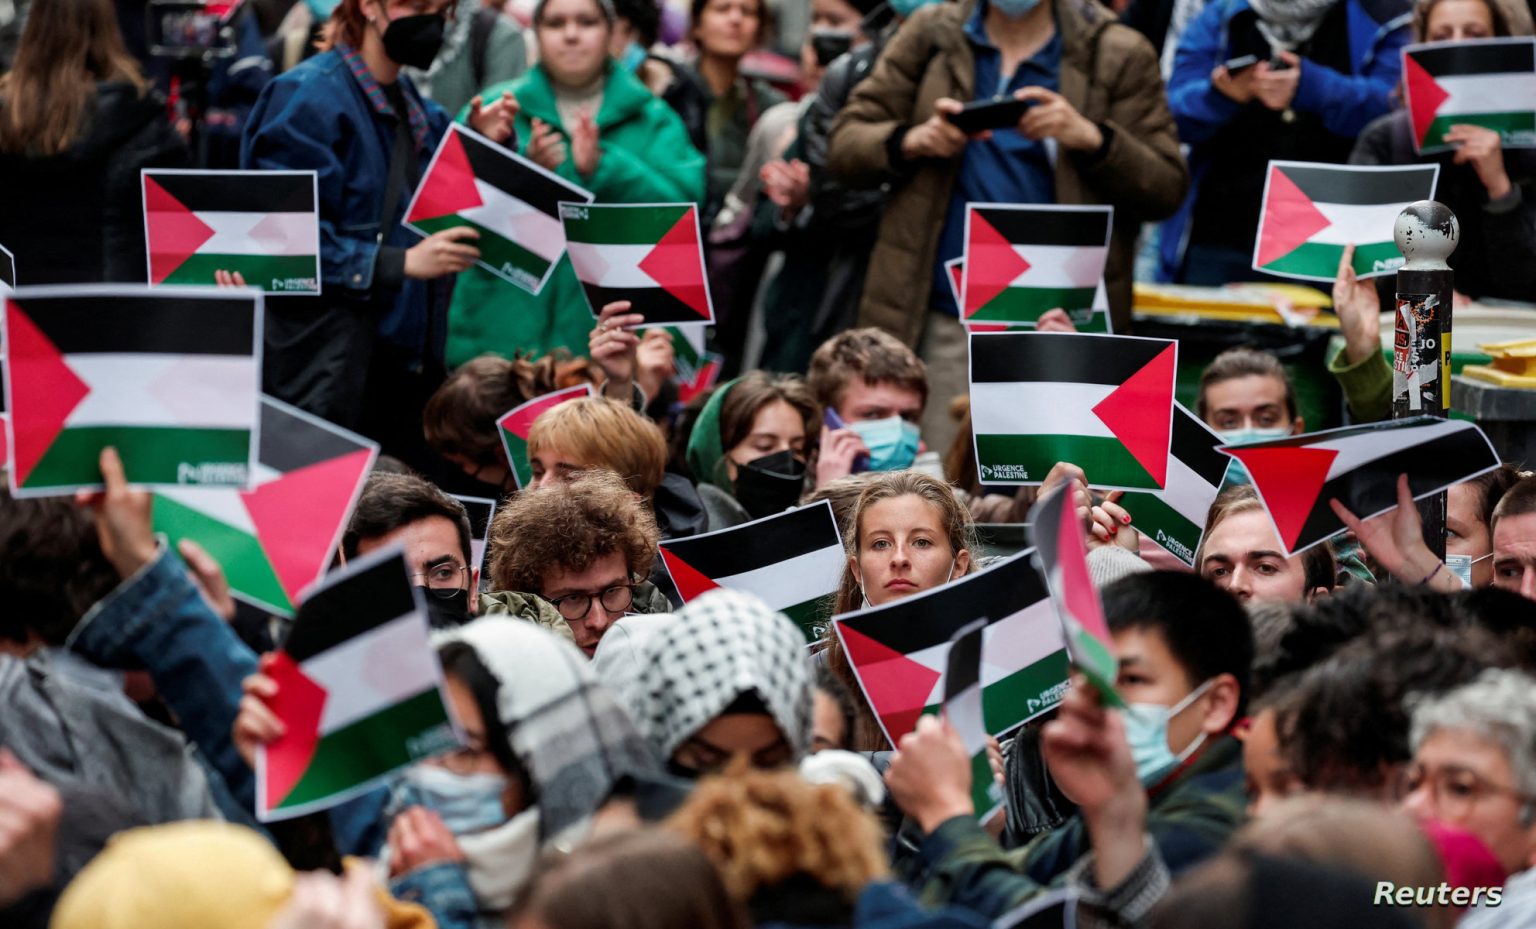 جامعة عريقة تغلق فرعها الرئيس في باريس على خلفية تظاهرات مؤيدة لغزة